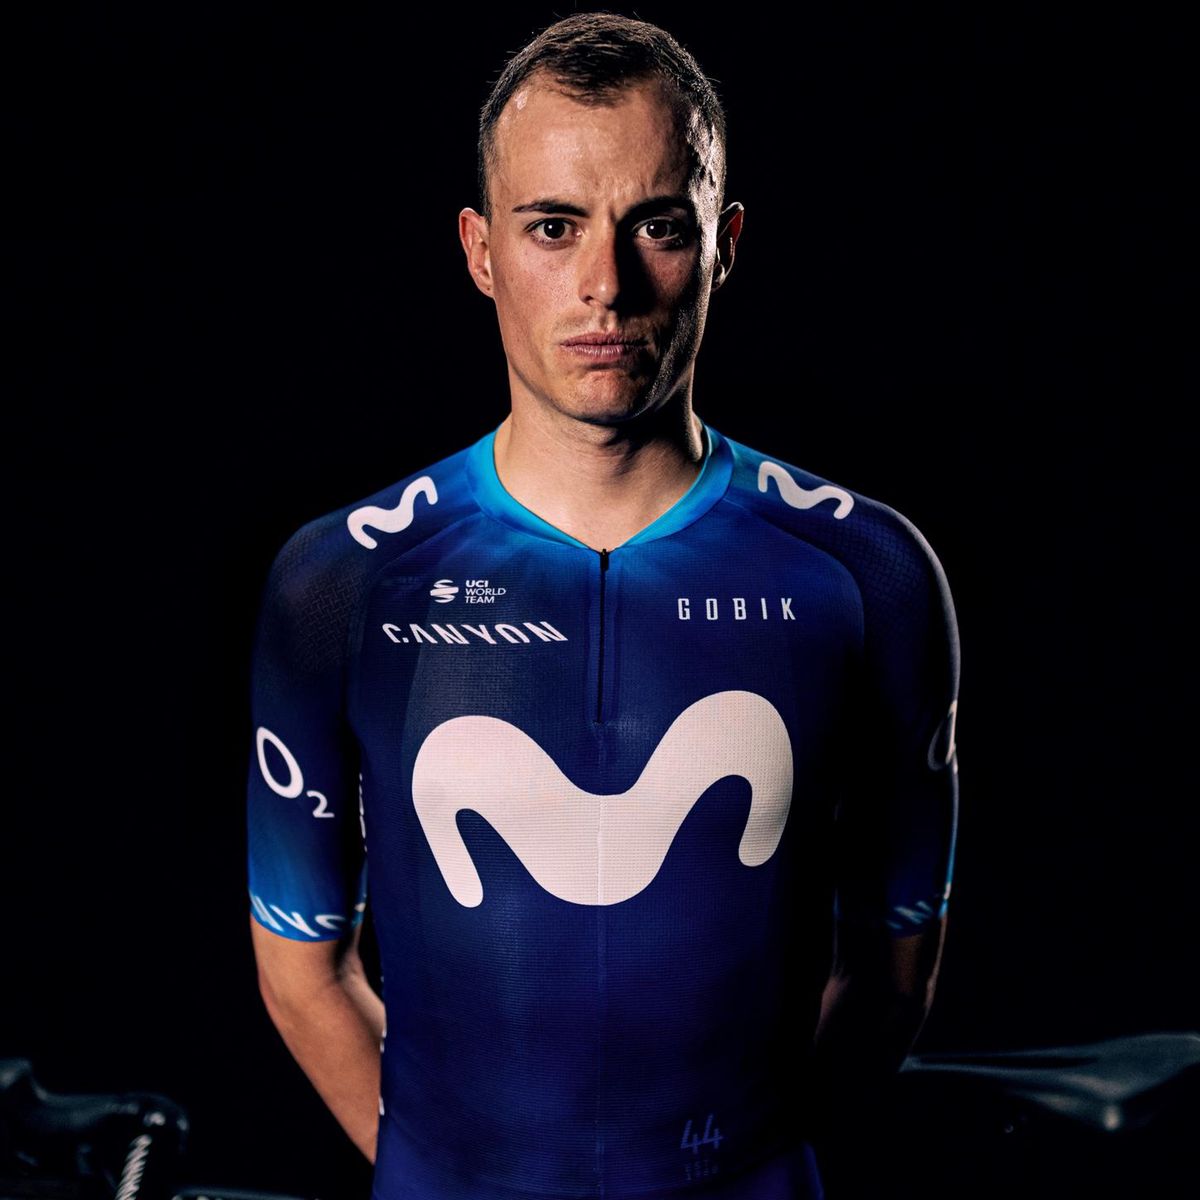 Ciclismo | muda de piel: Maillot azul en colaboración una marca española - Eurosport